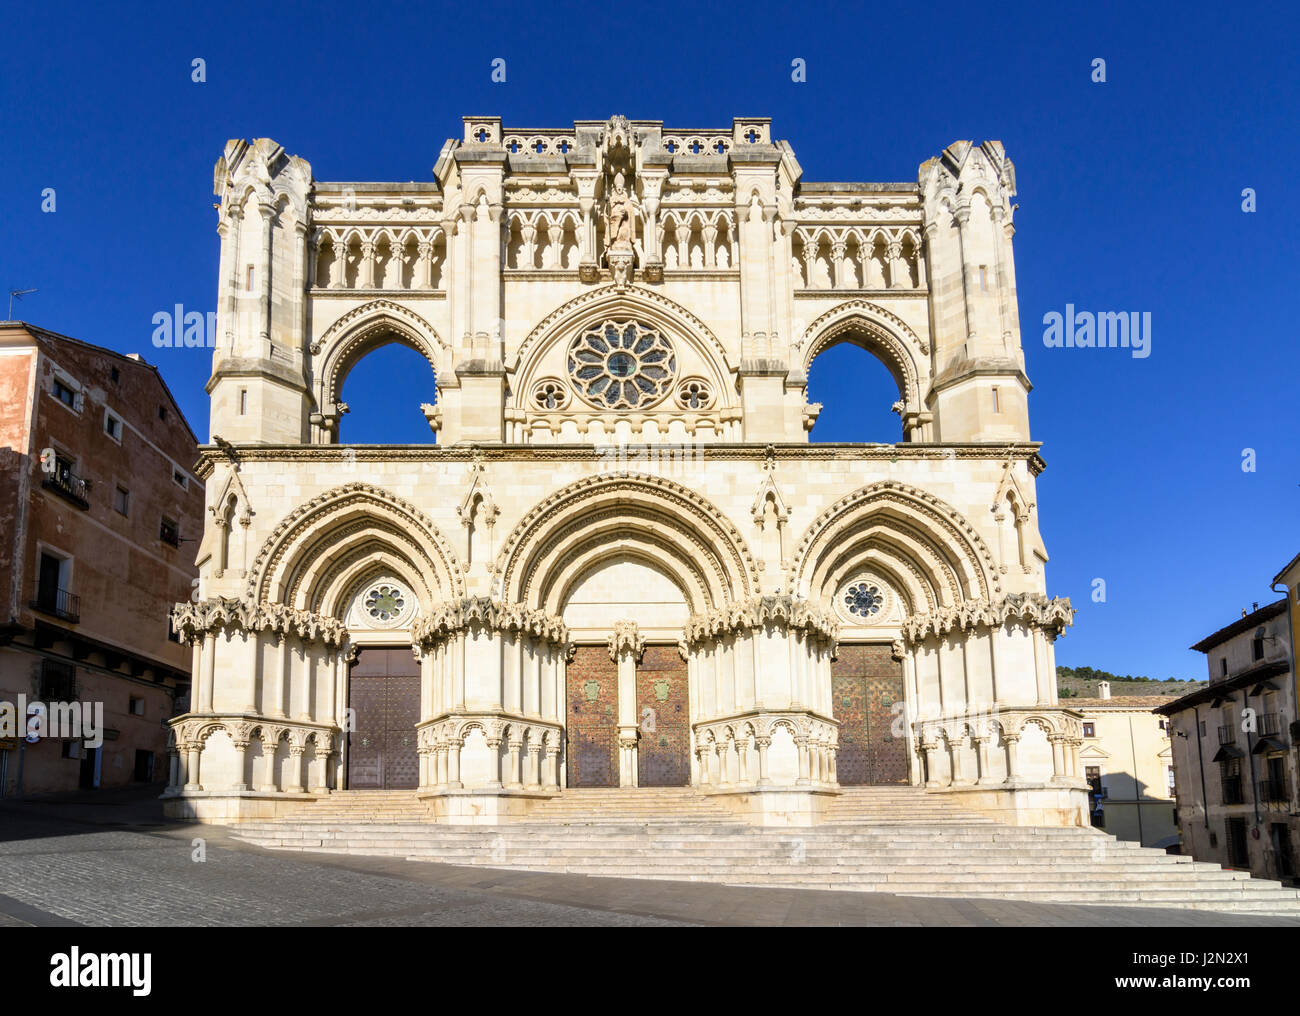 La facciata della Cattedrale di Santa Maria de Gracia, Plaza Mayor, Cuenca, Castilla La Mancha, in Spagna Foto Stock